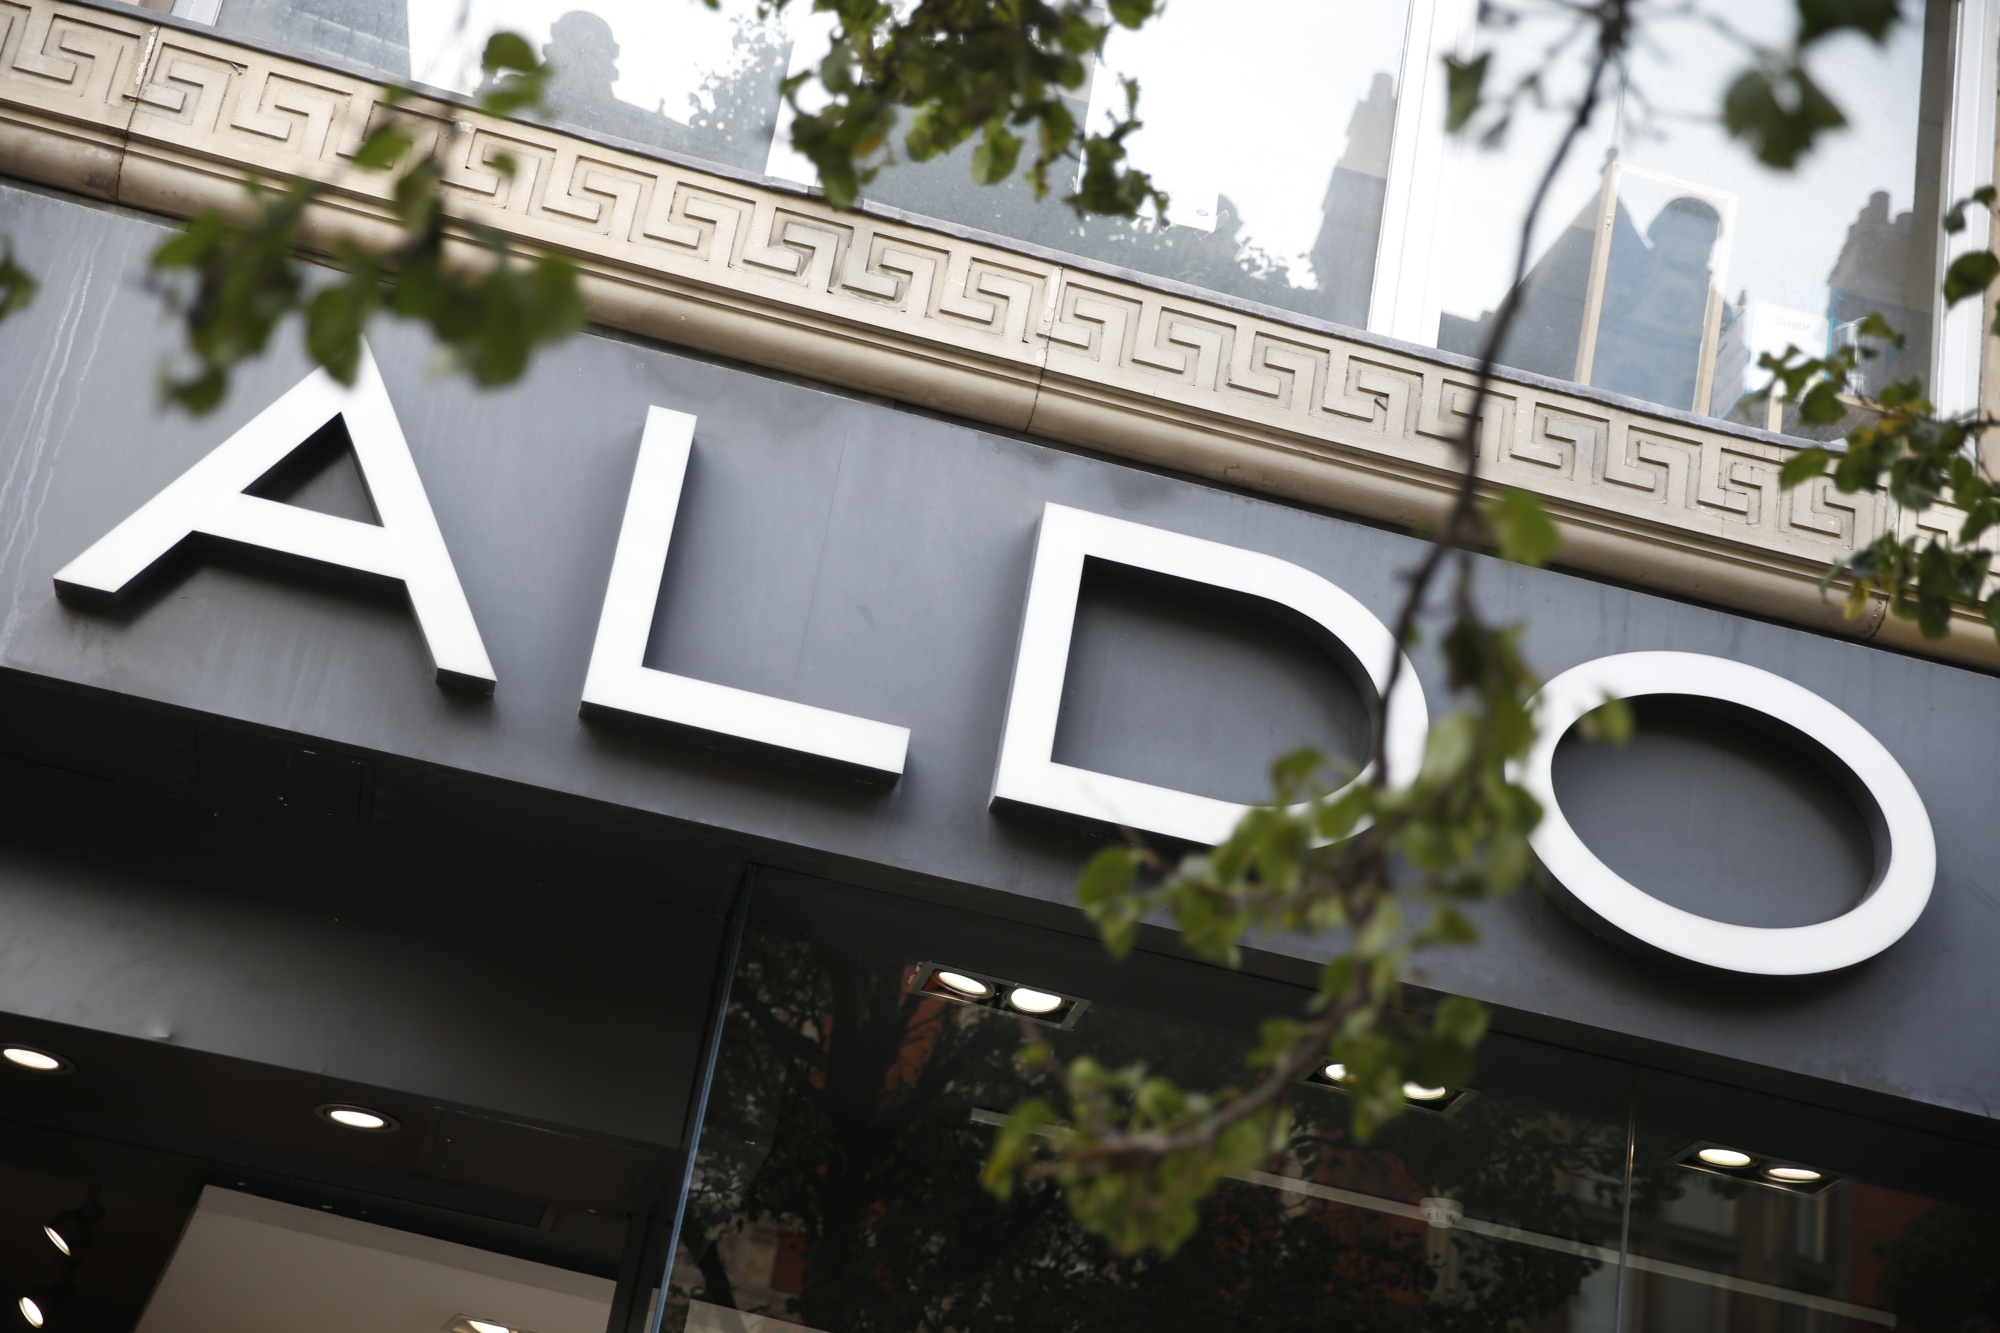 Udveksle spiselige hvorfor Shoe Chain Aldo Seeks Bankruptcy Protection to Trim Debt - Bloomberg